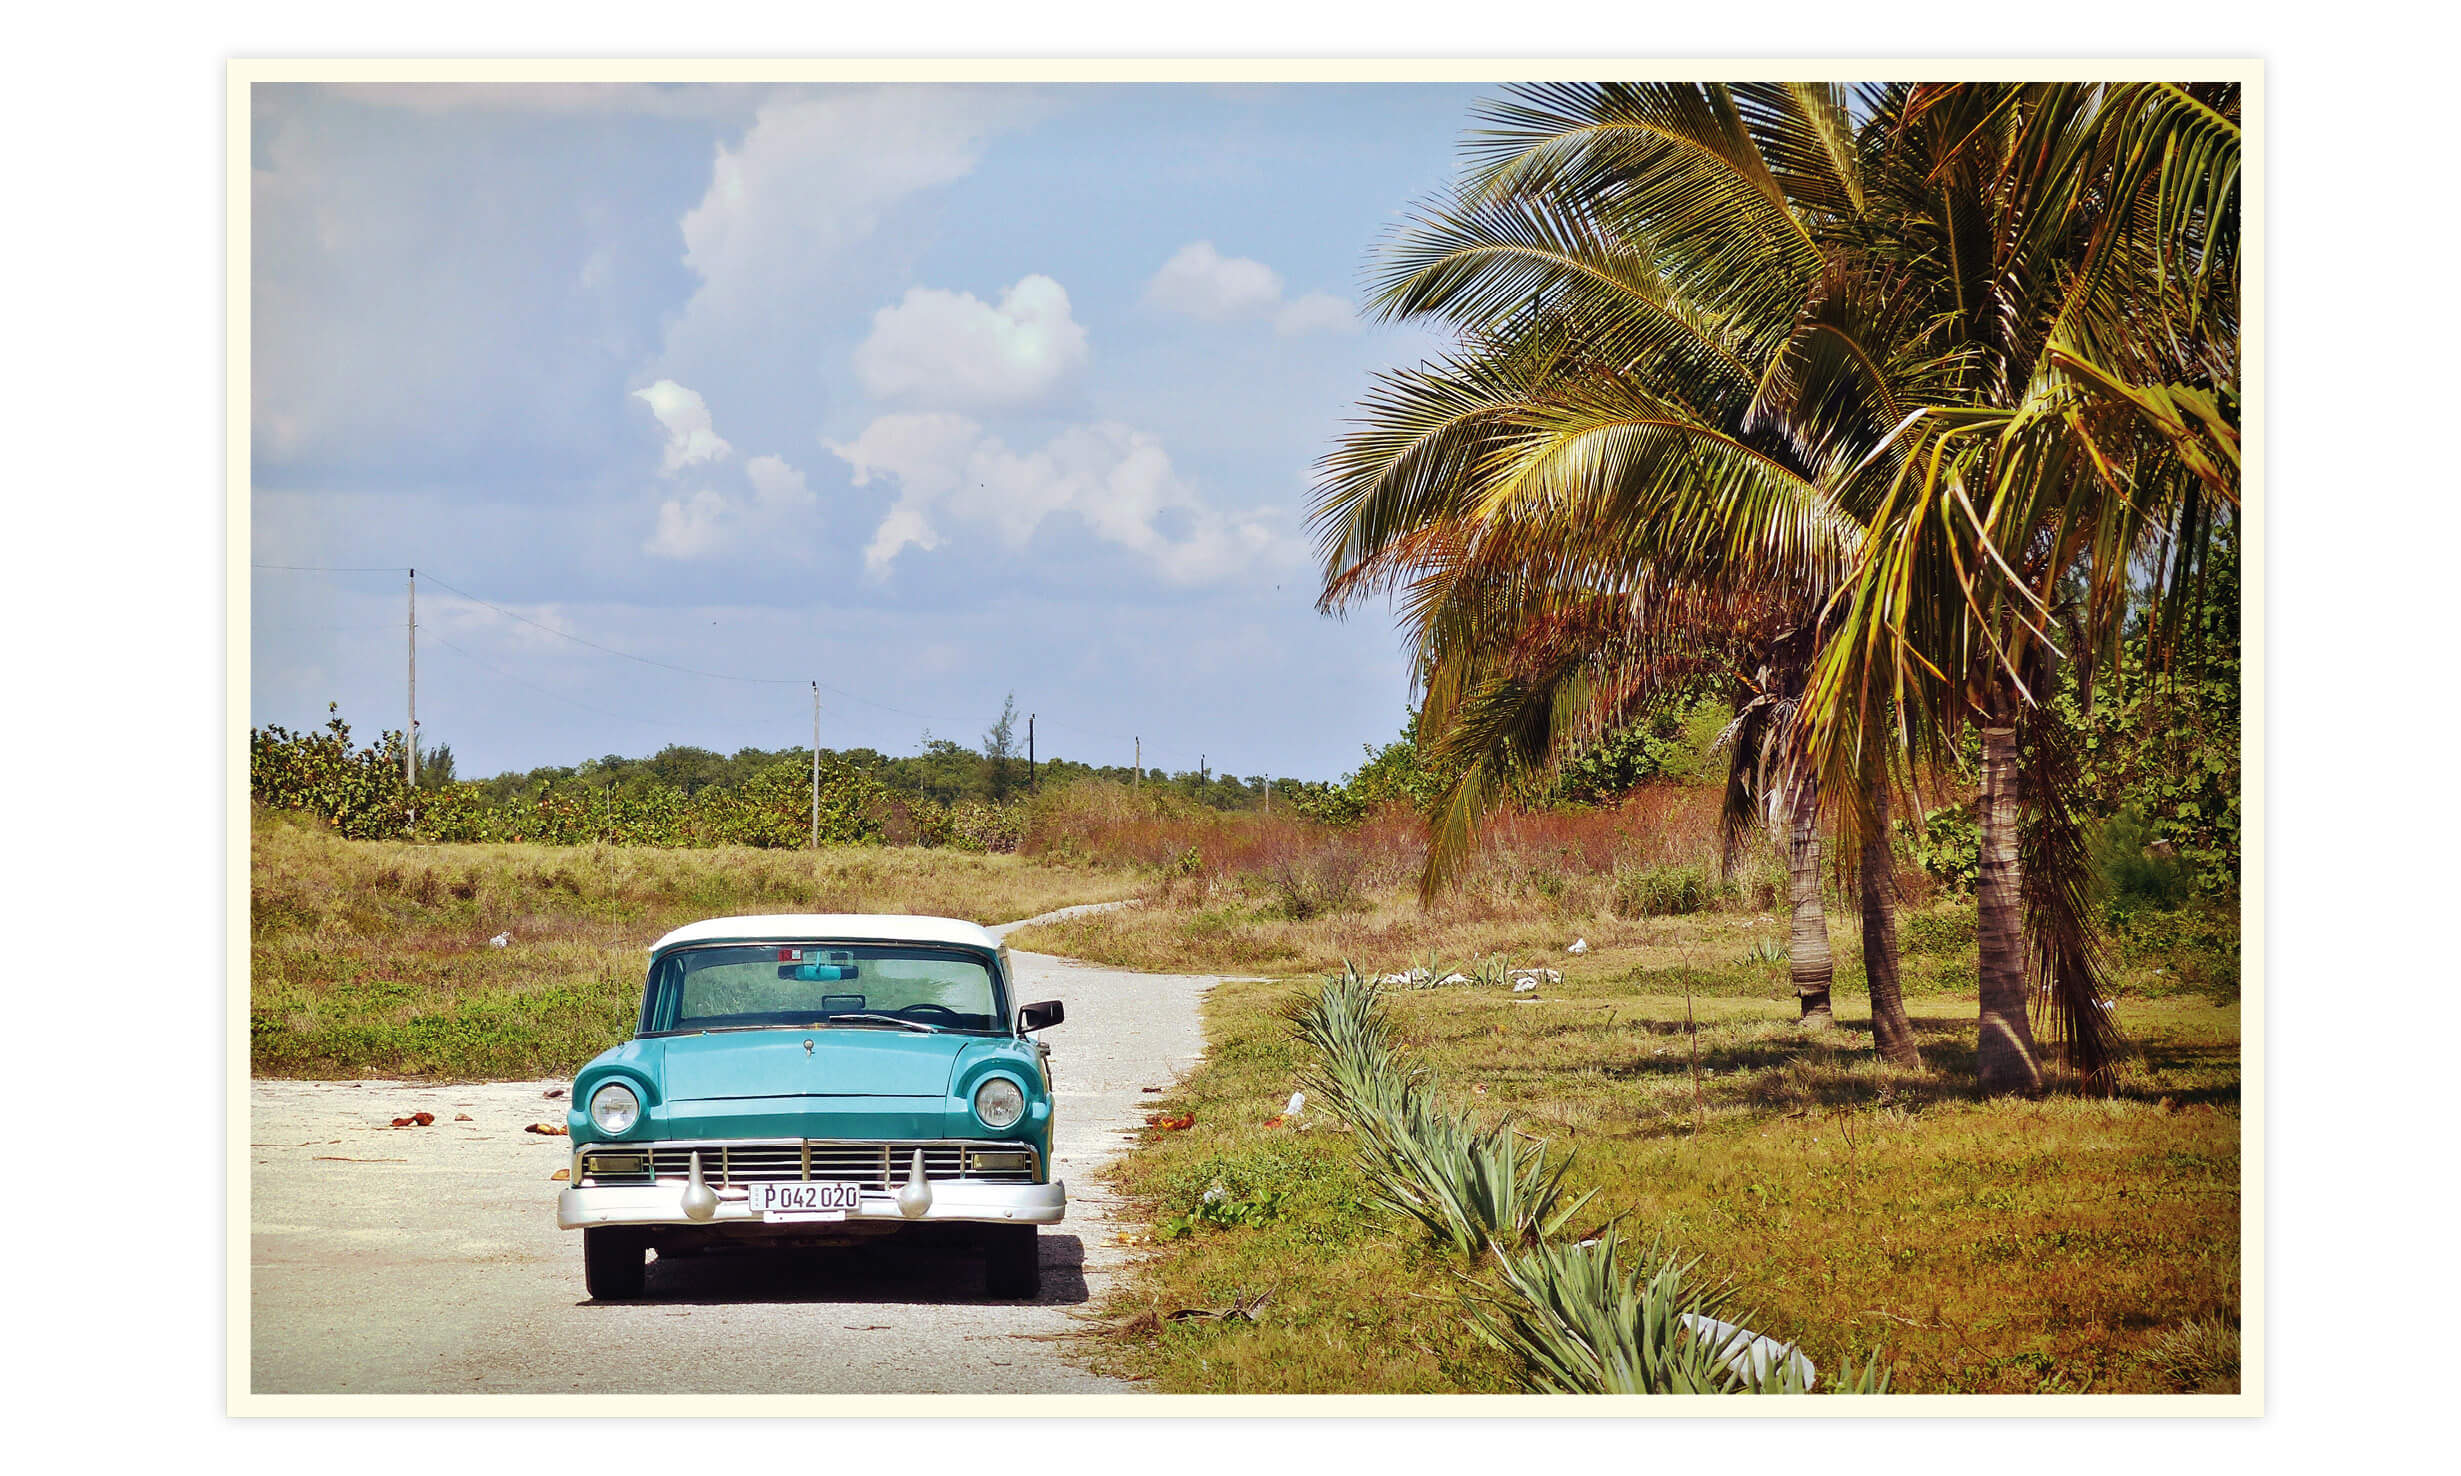 cuba, voyage, La Havane, varadero, vinales, Trinidad, caraïbes, playa larga